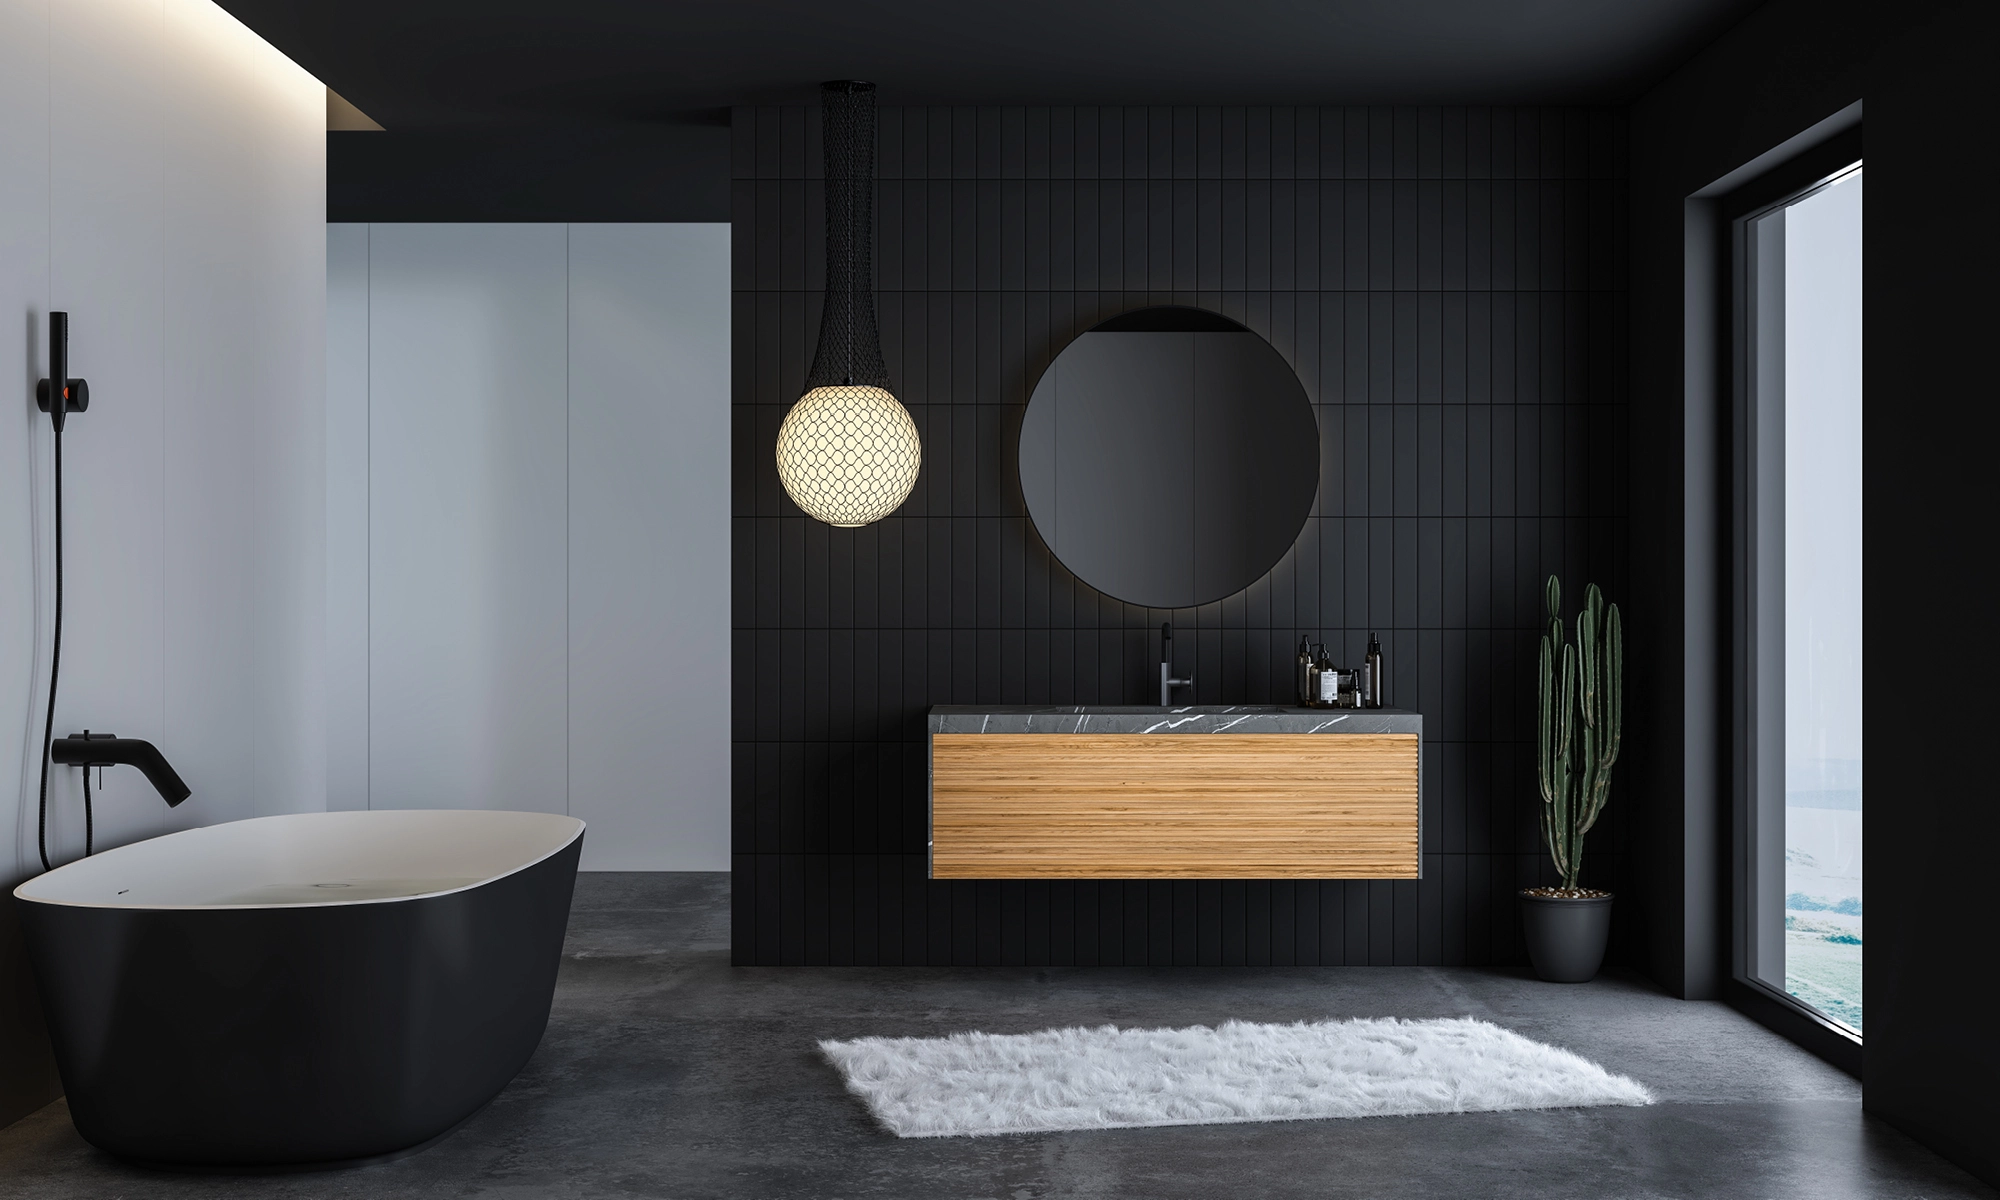 Ein minimalistisches Badezimmer in Mattschwarz mit einem Kontrast aus hellem Holz zeigt moderne Badezimmertrends.